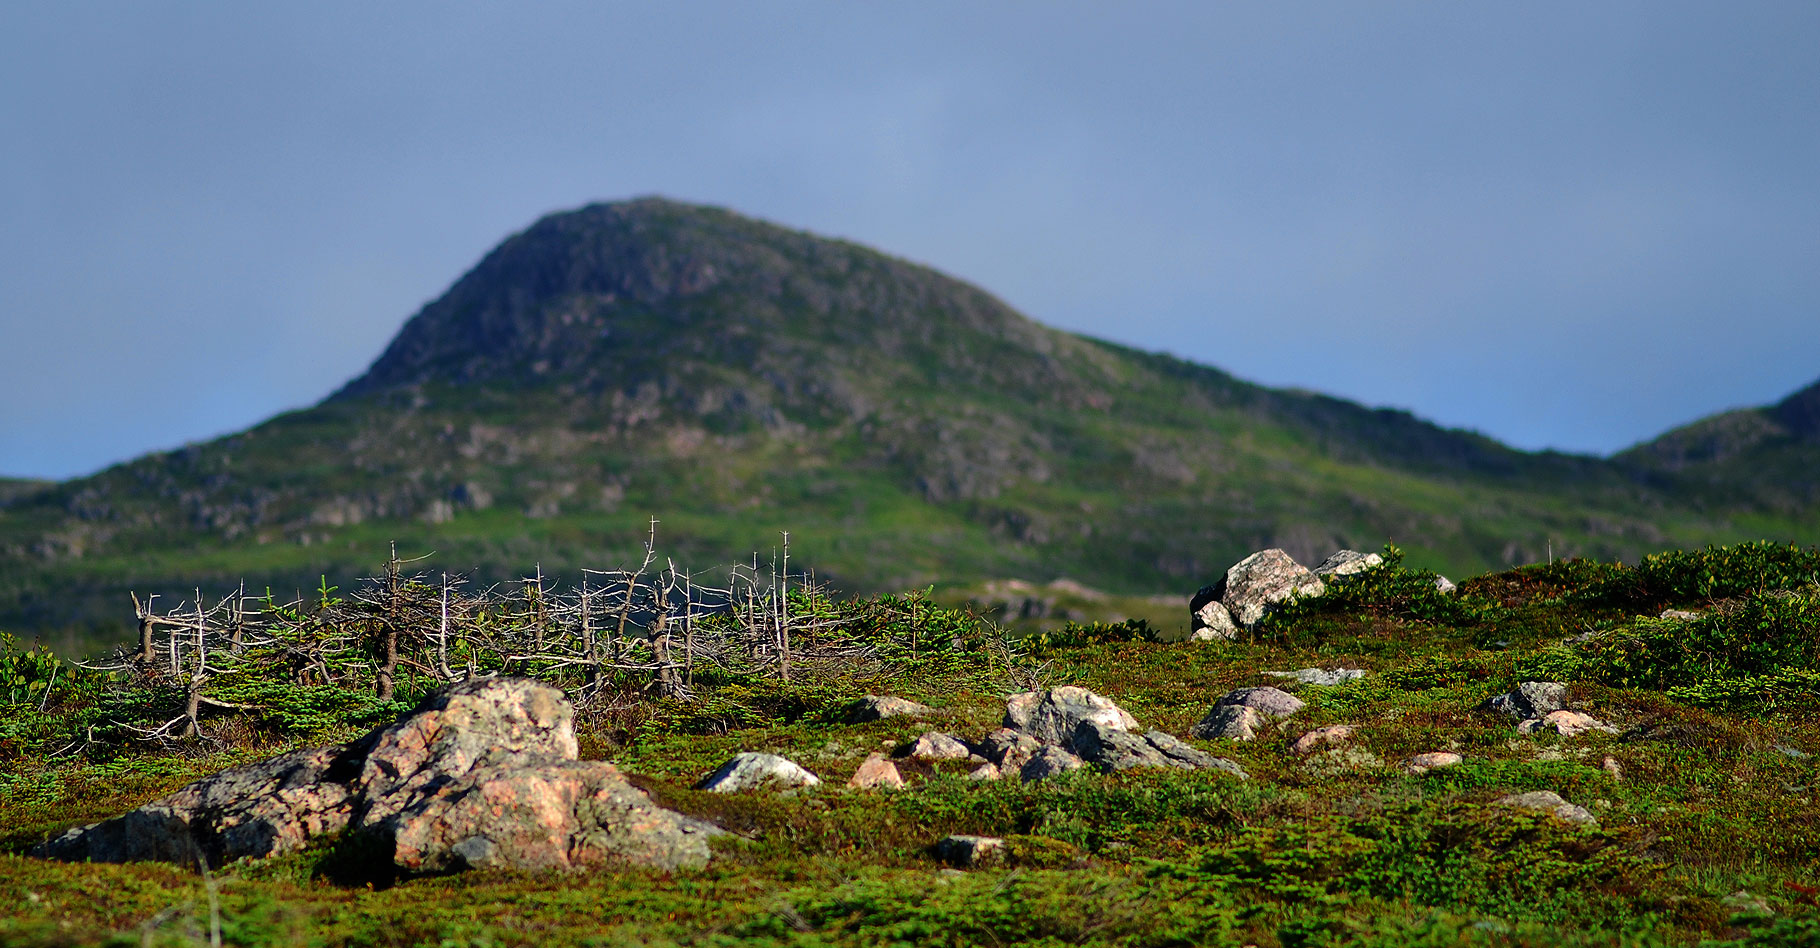 Les tourbières de St Pierre et Miquelon. © Gord McKenna - CC BY-NC 2.0